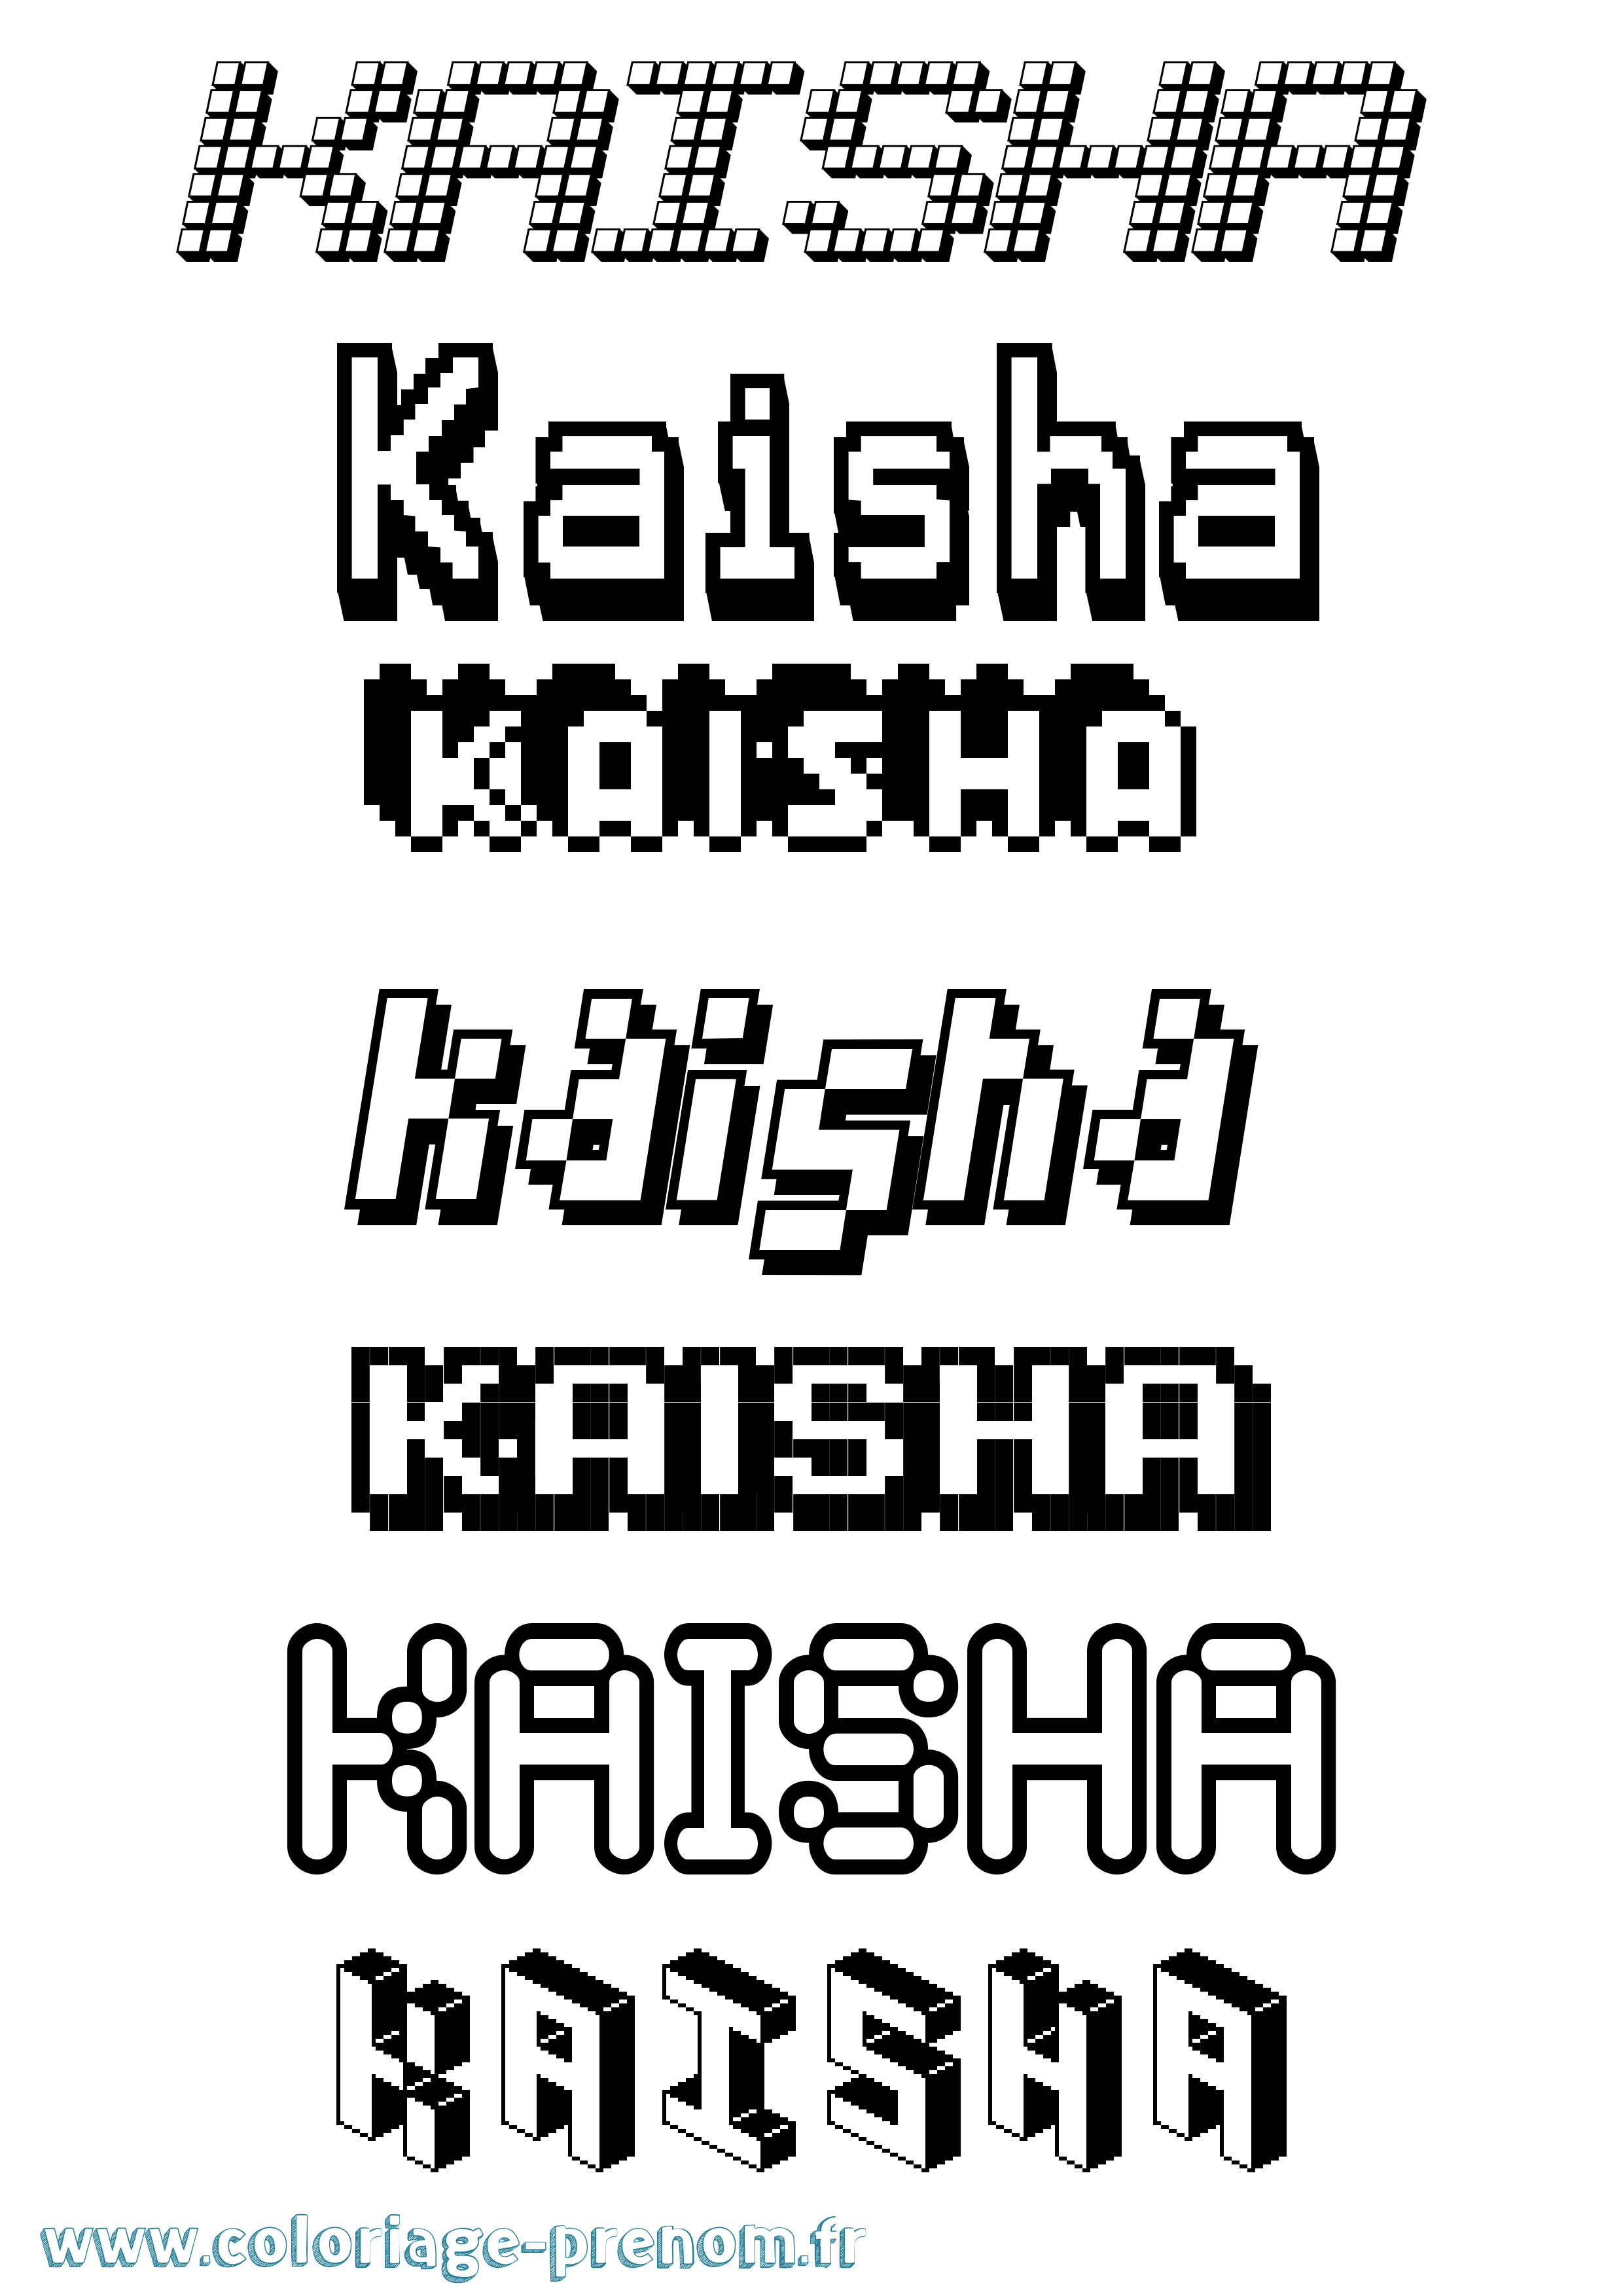 Coloriage prénom Kaisha Pixel